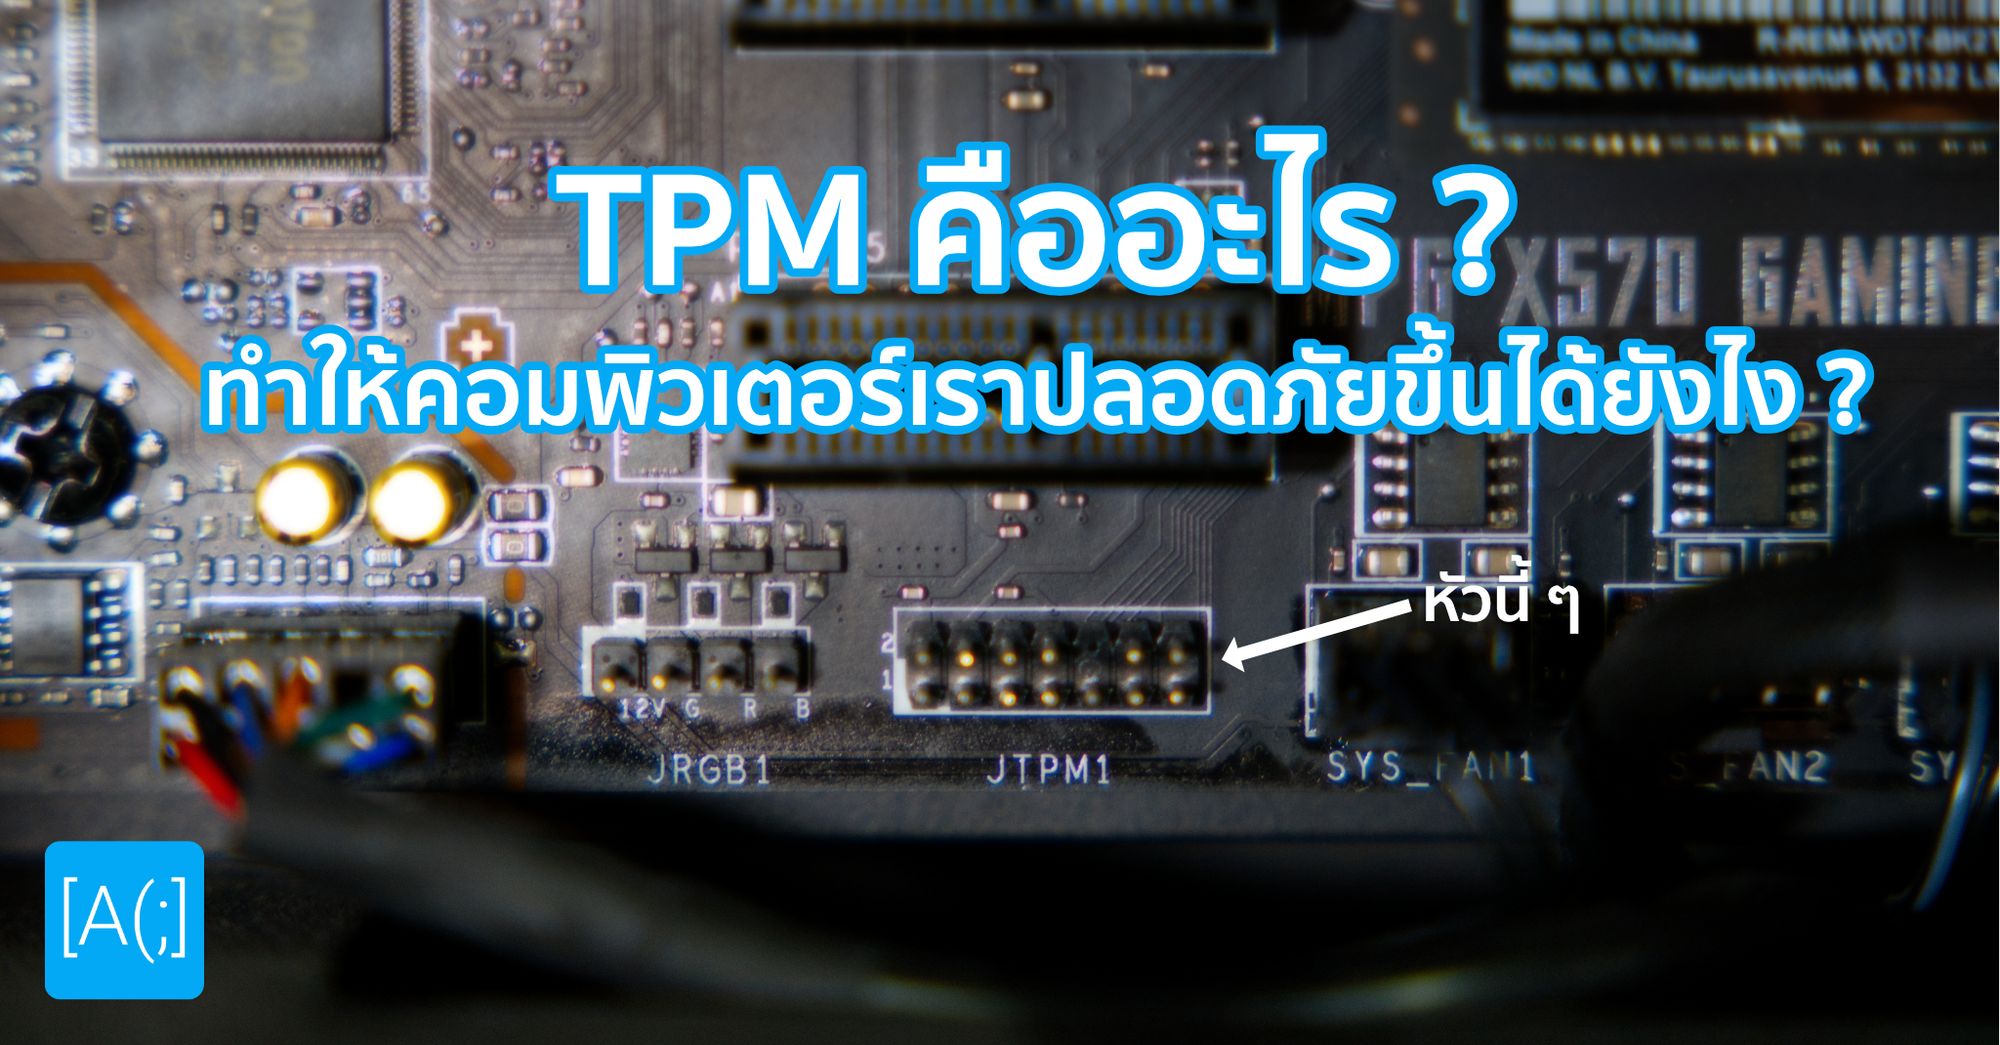 TPM คืออะไร ? ทำให้คอมพิวเตอร์เราปลอดภัยขึ้นได้ยังไง ?